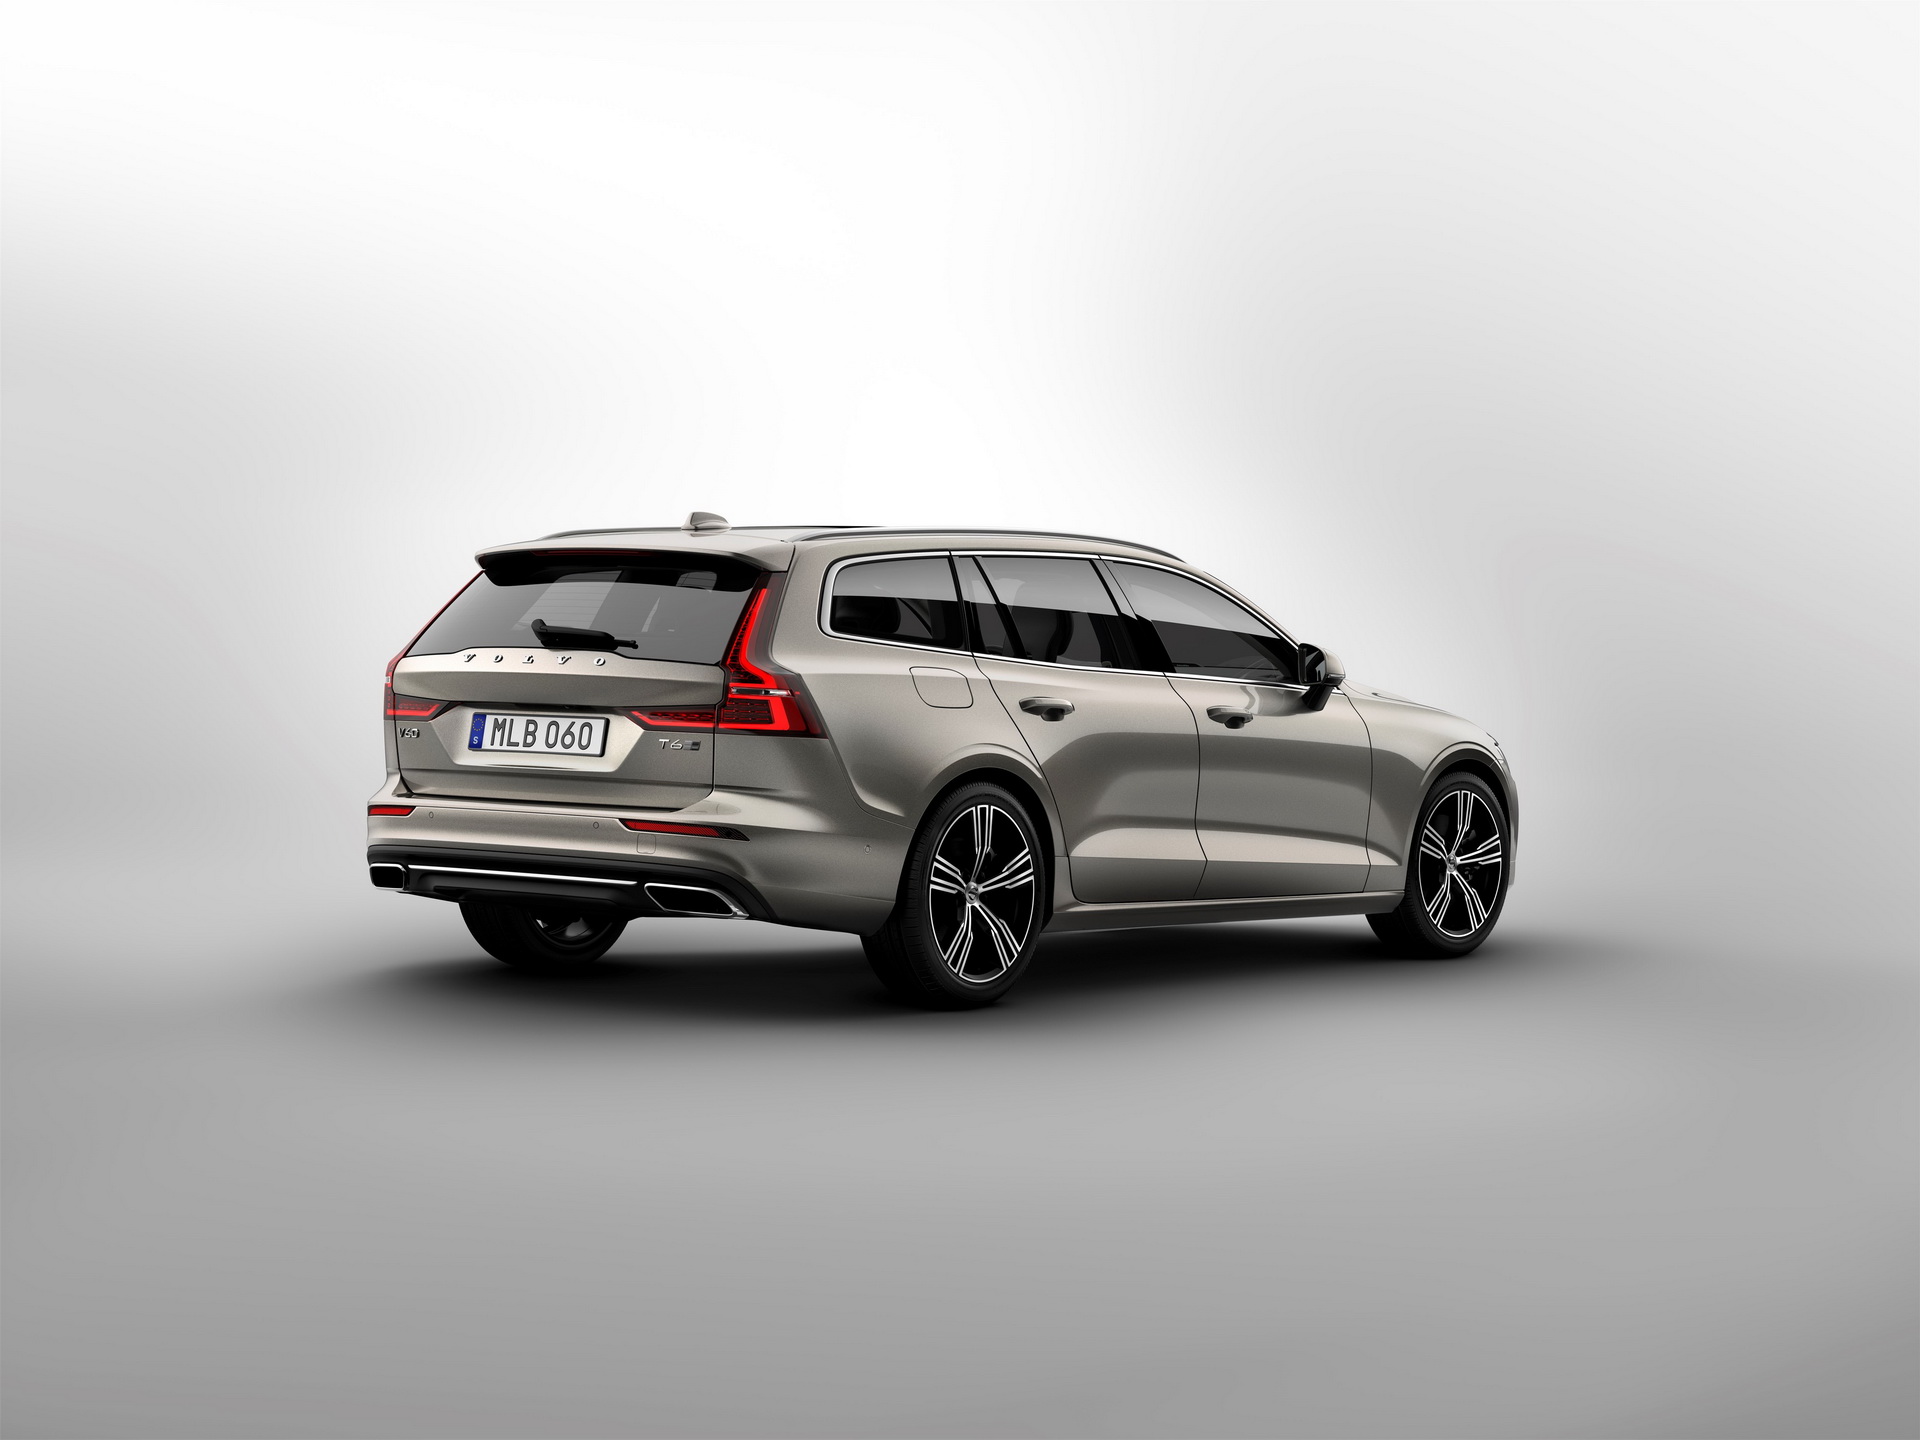 Nowe Volvo V60 najpiękniejsze kombi na rynku? Infor.pl